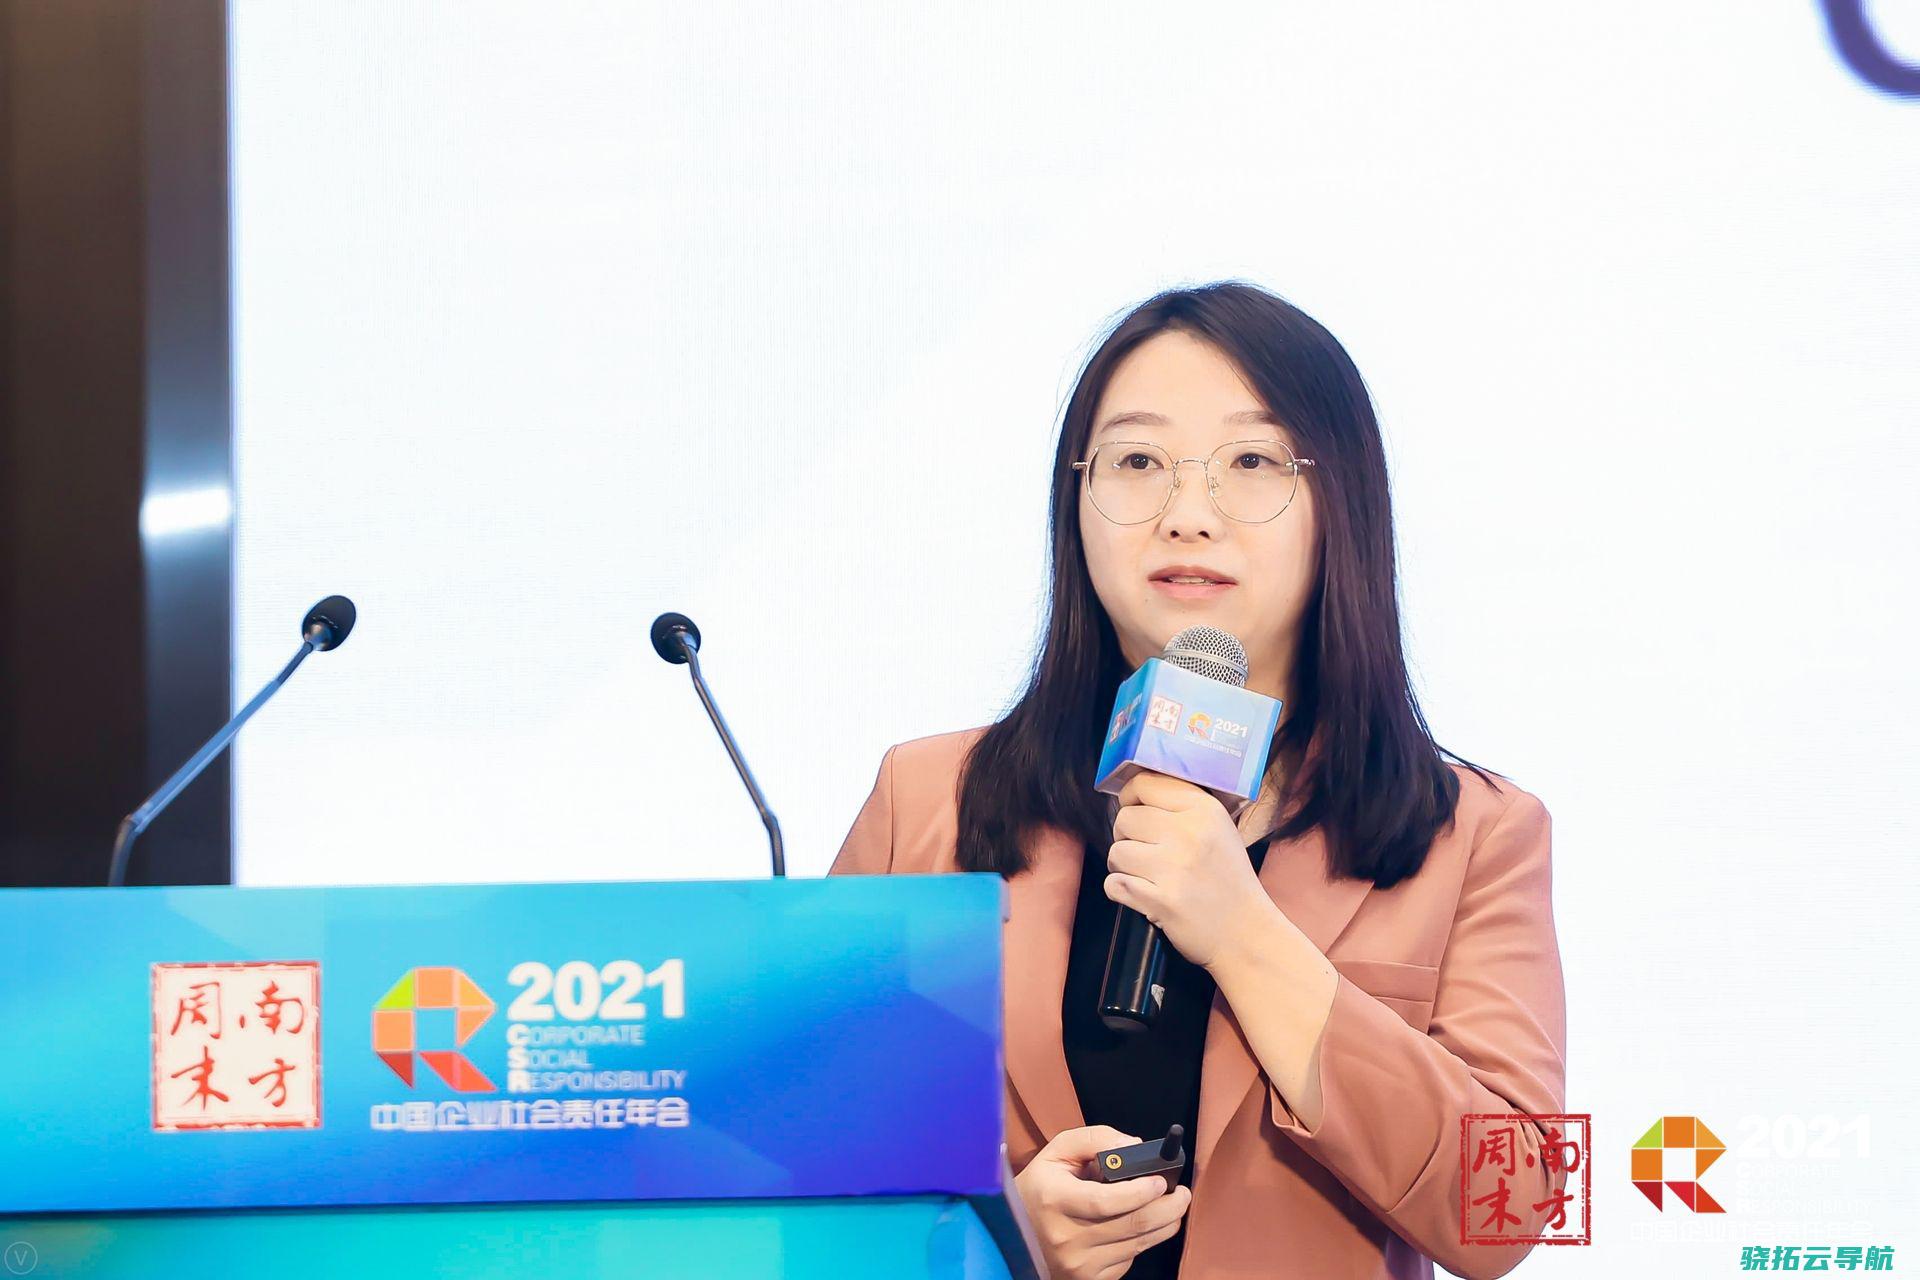 双碳指标2021中国企业社会责任年会提供答案下企